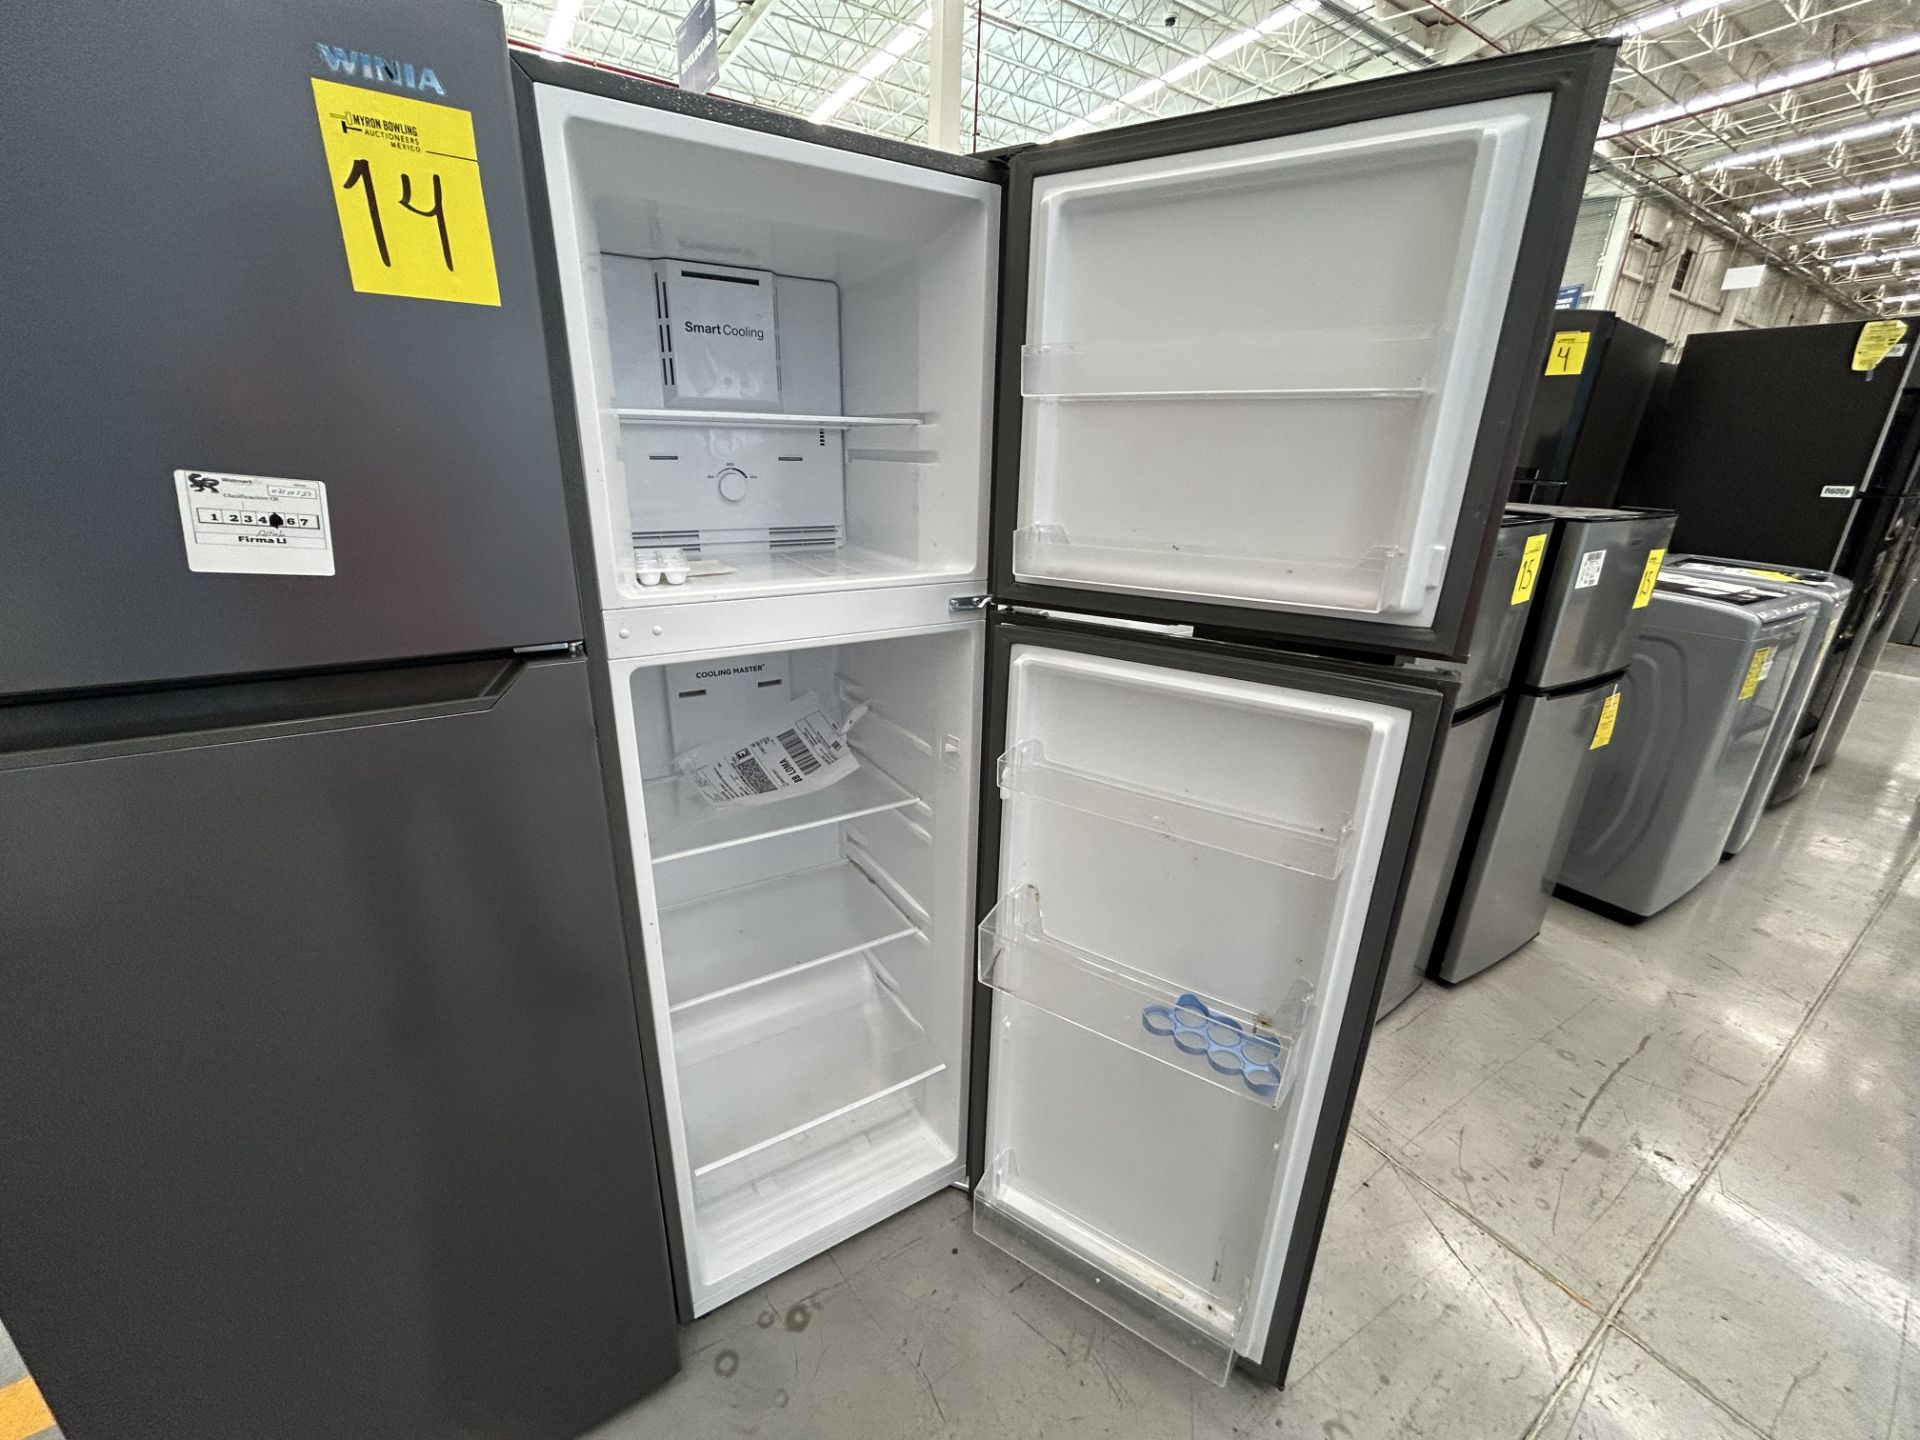 Lote de 2 Refrigeradores contiene: 1 Refrigerador Marca WINIA, Modelo WRT9000AMMX, Serie 012580, Co - Image 4 of 6